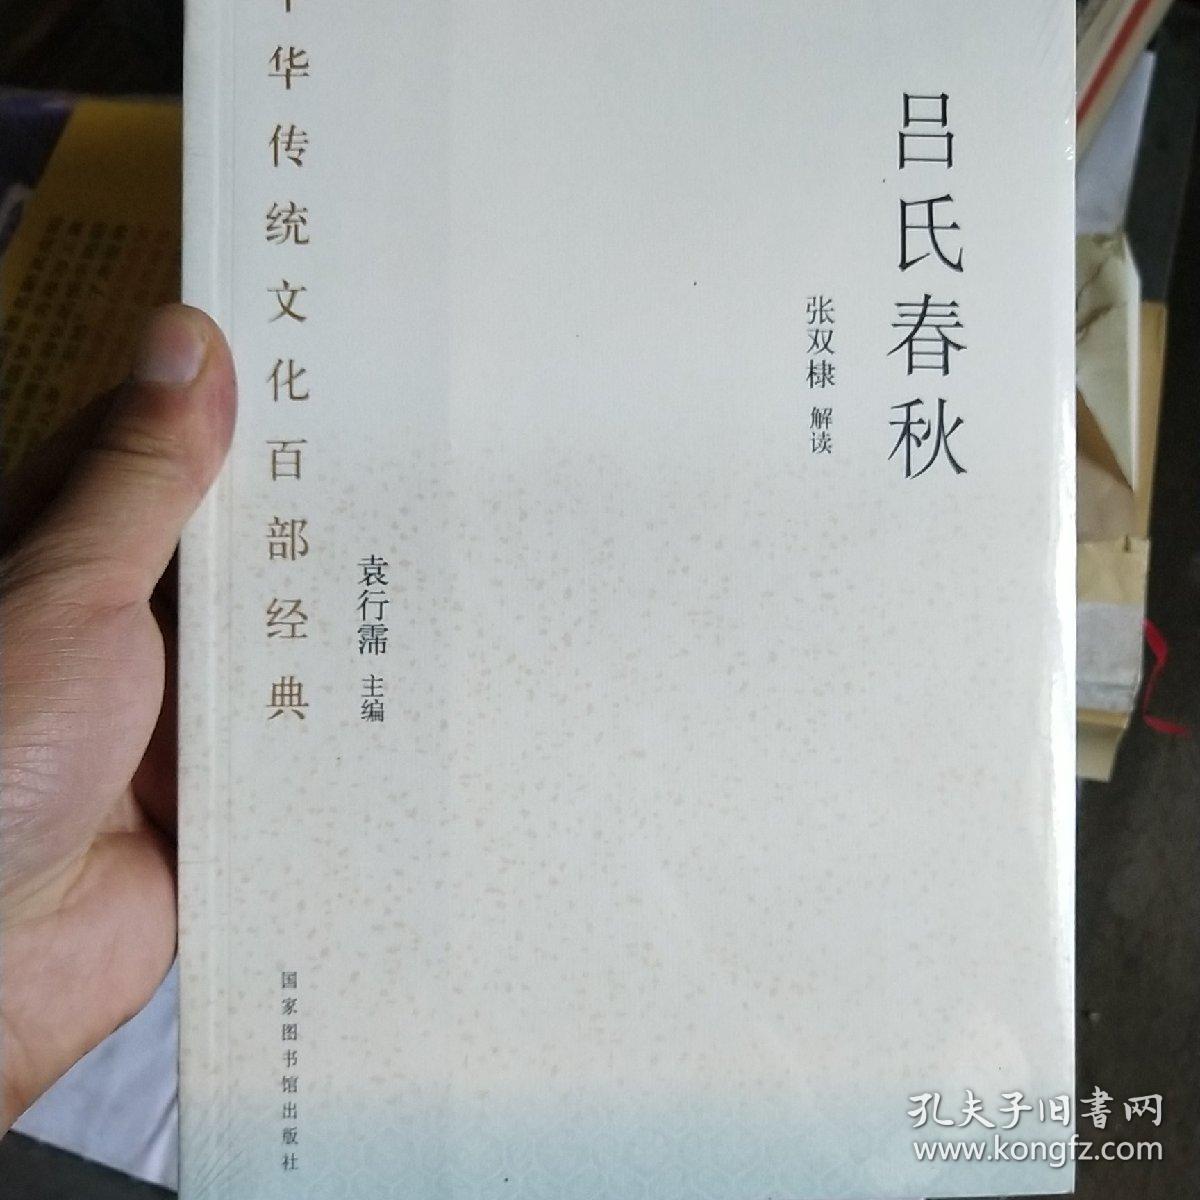 中华传统文化百部经典·吕氏春秋（平装）